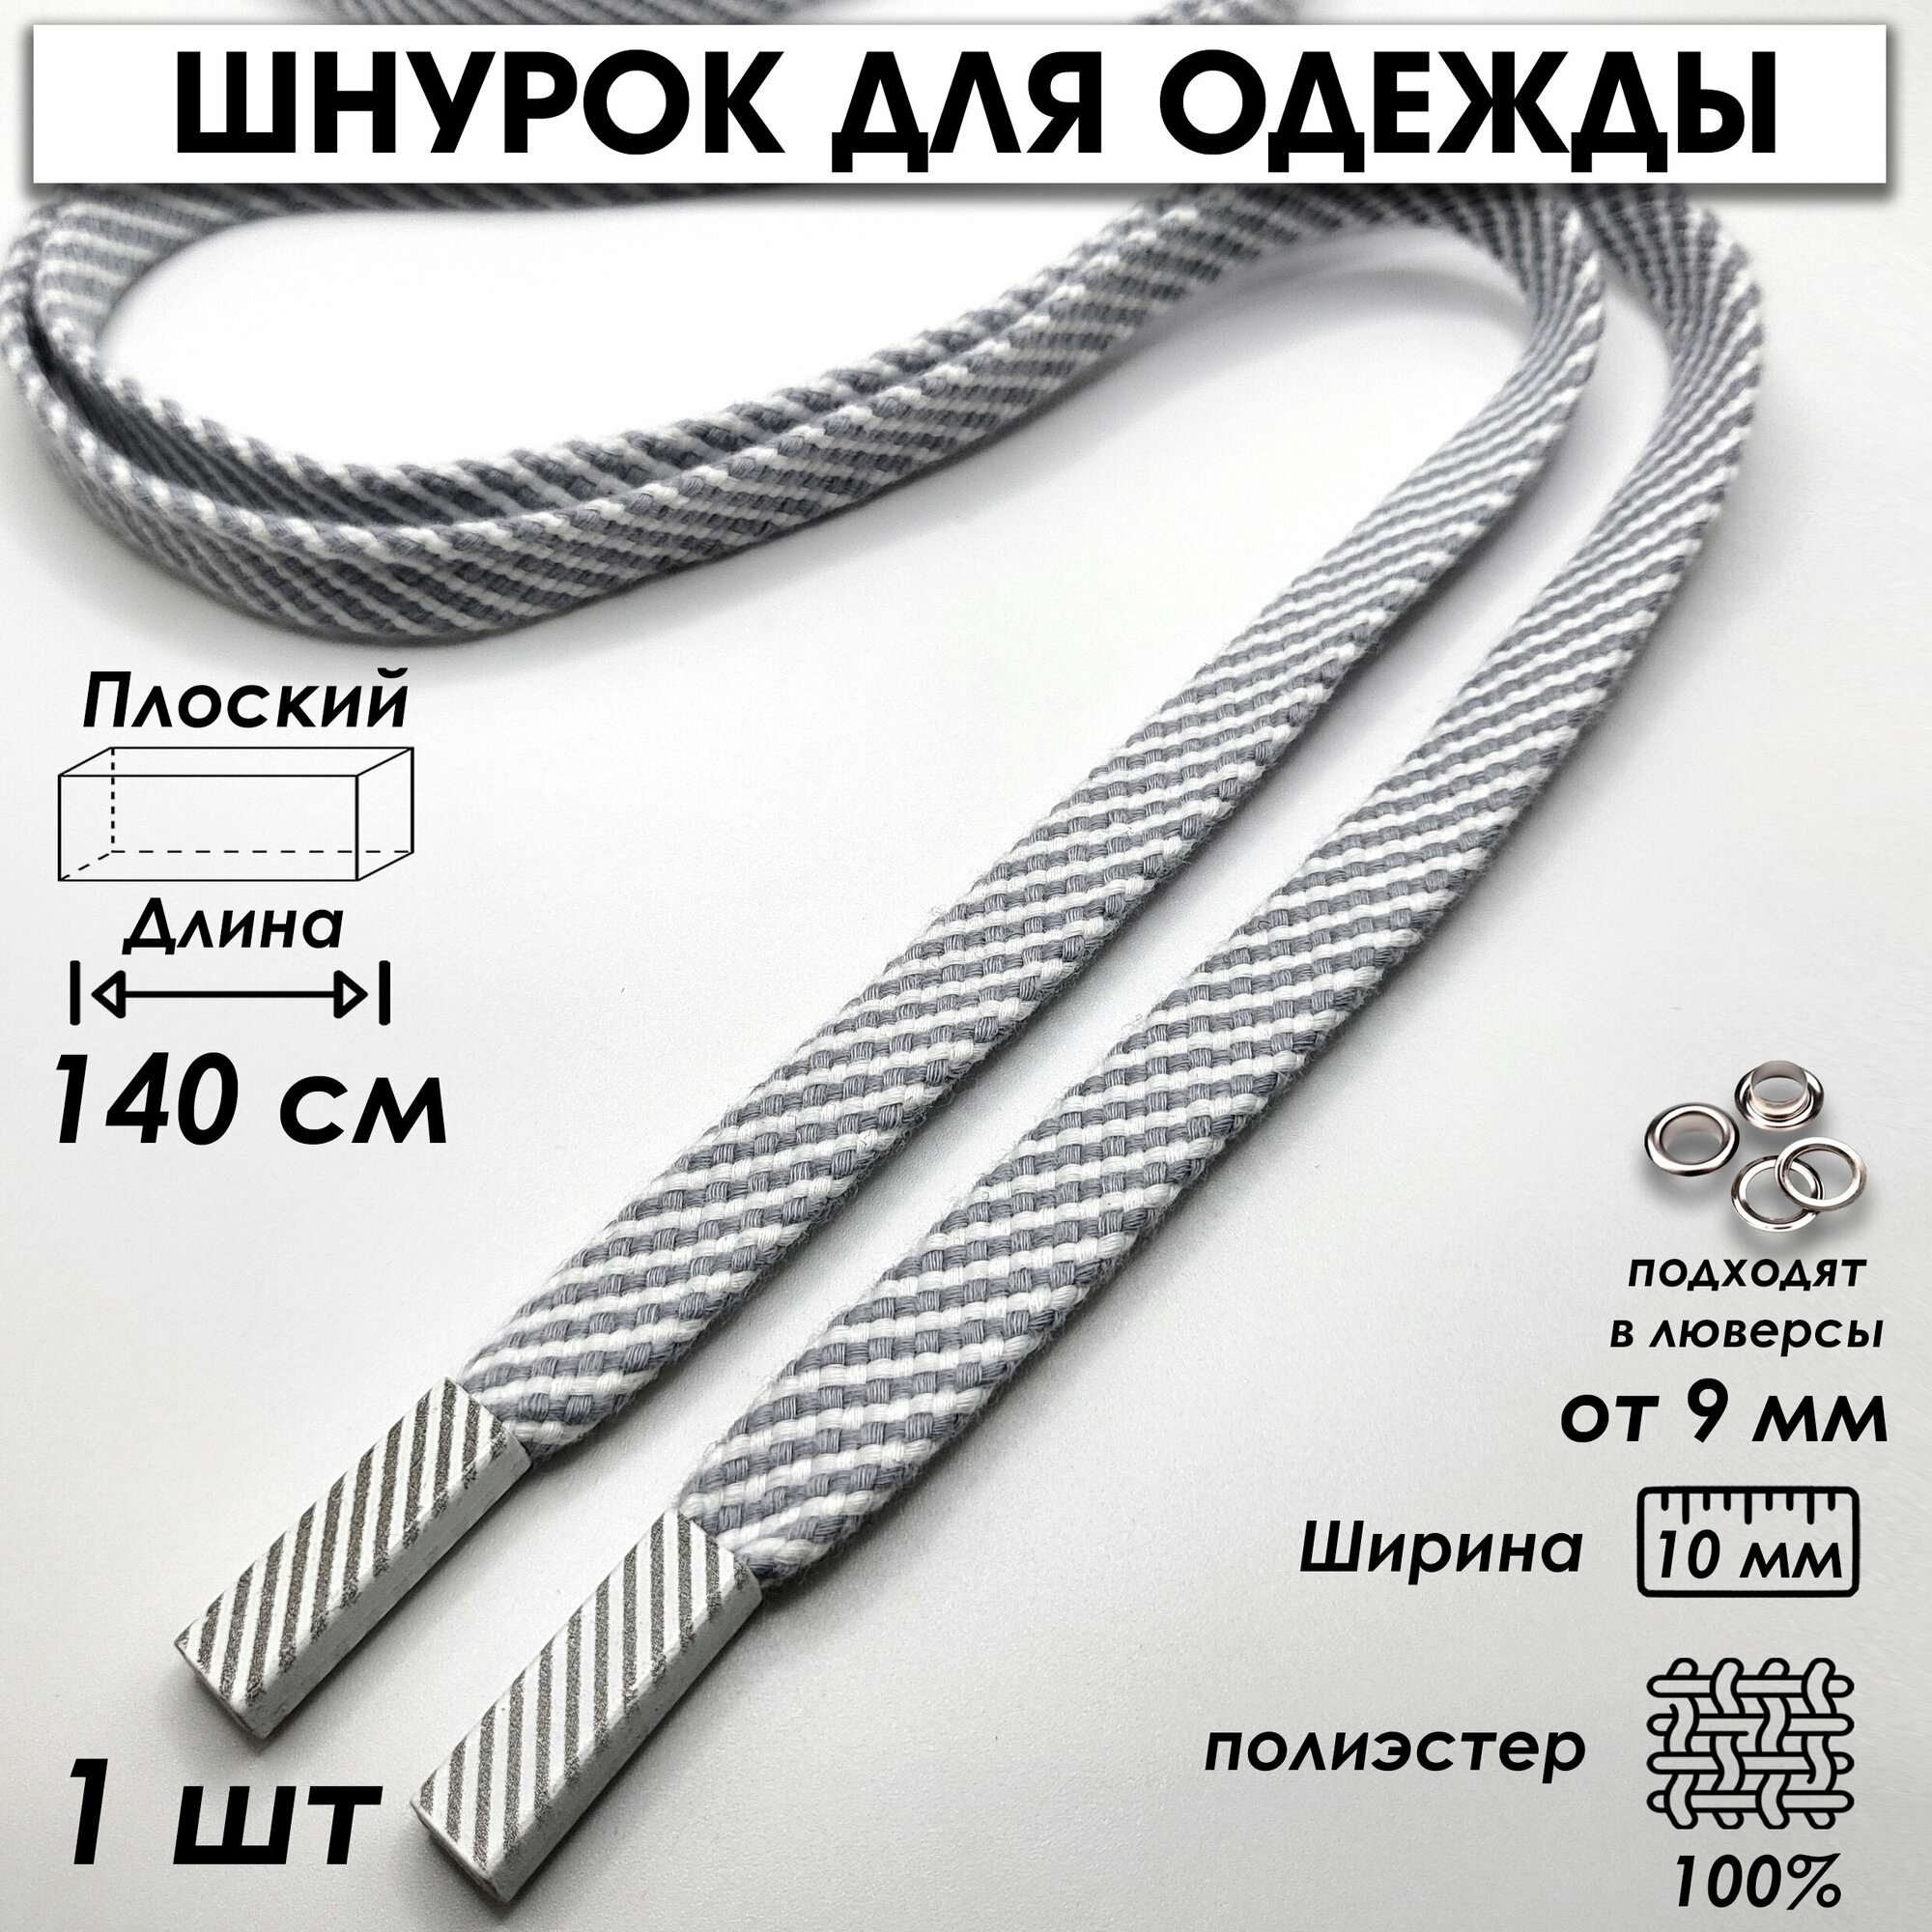 Шнурок для одежды плоский полосатый 140 см 1 шт, серый, белый